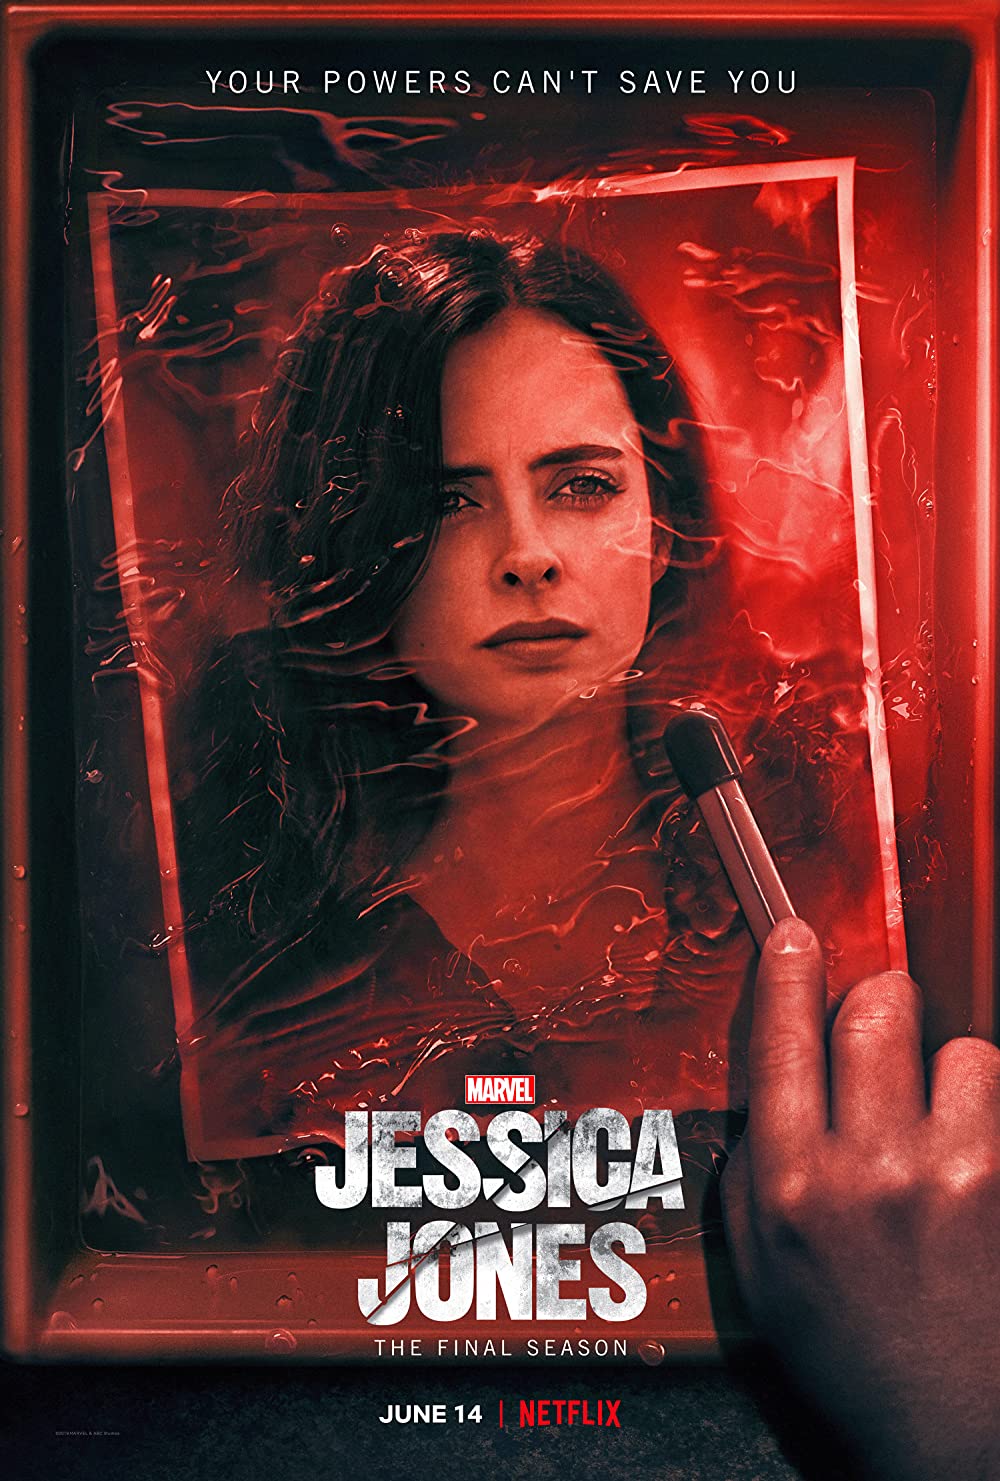 ดูหนังออนไลน์ฟรี Jessica Jones Season1 EP.2 เจสซิก้า โจนส์ ซับไทย ซีซั่น1 ตอนที่ 2